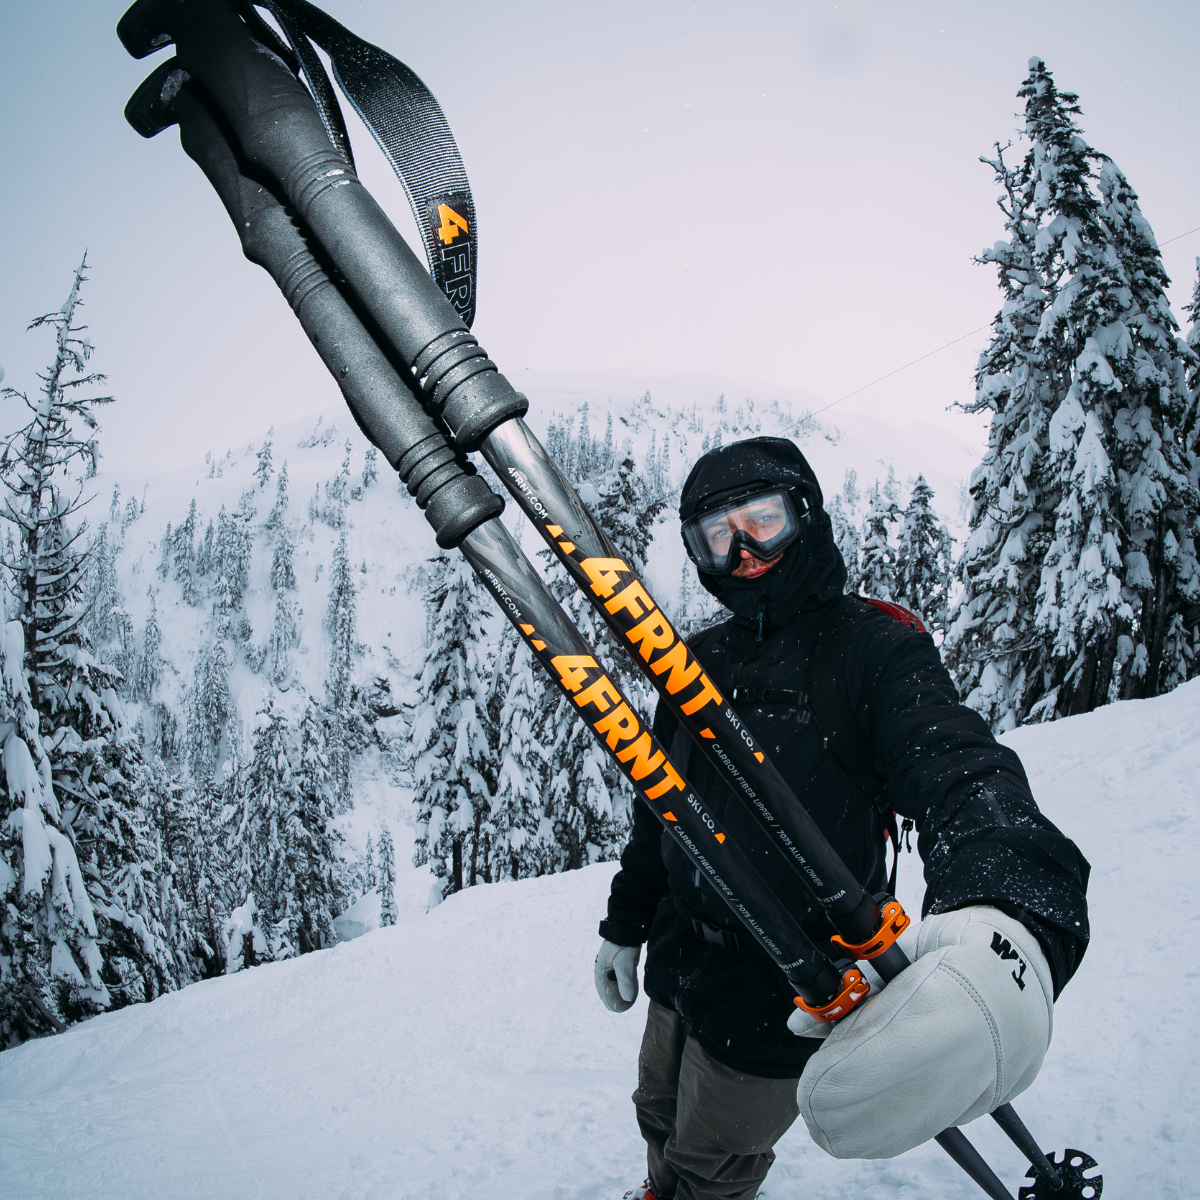 fisheye image of a skier holding 4frnt ski poles